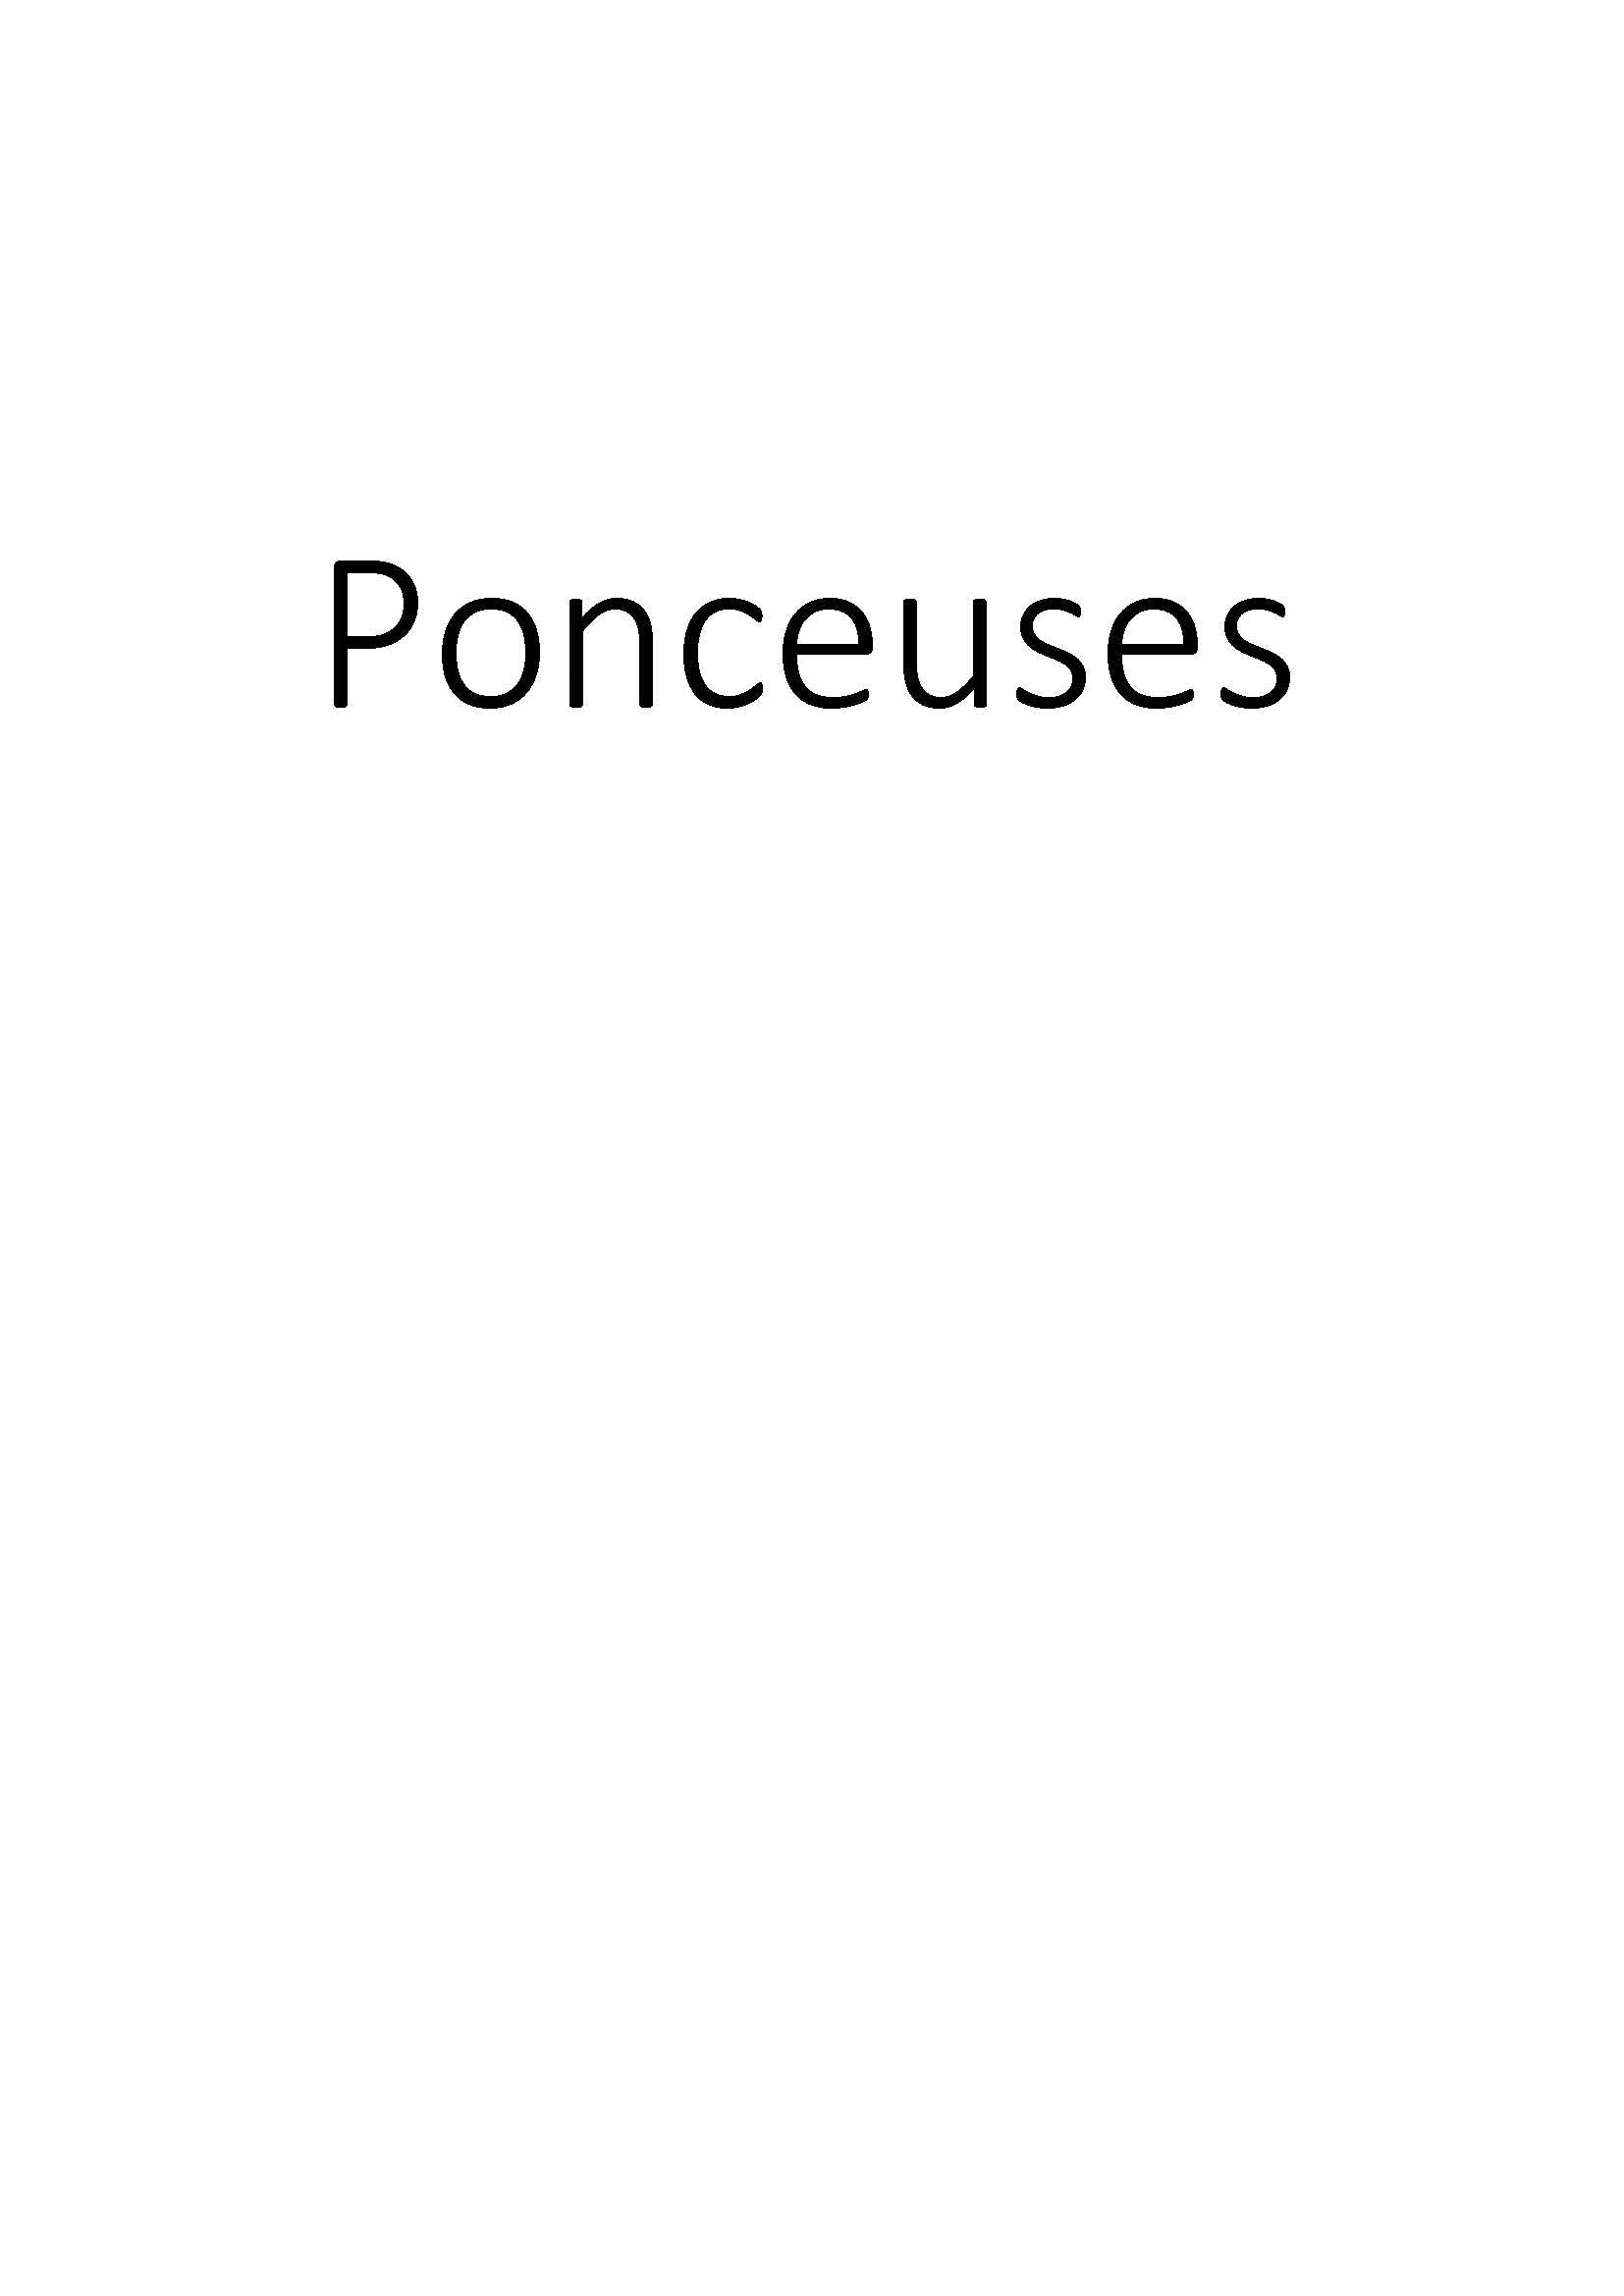 Ponceuses clicktofournisseur.com